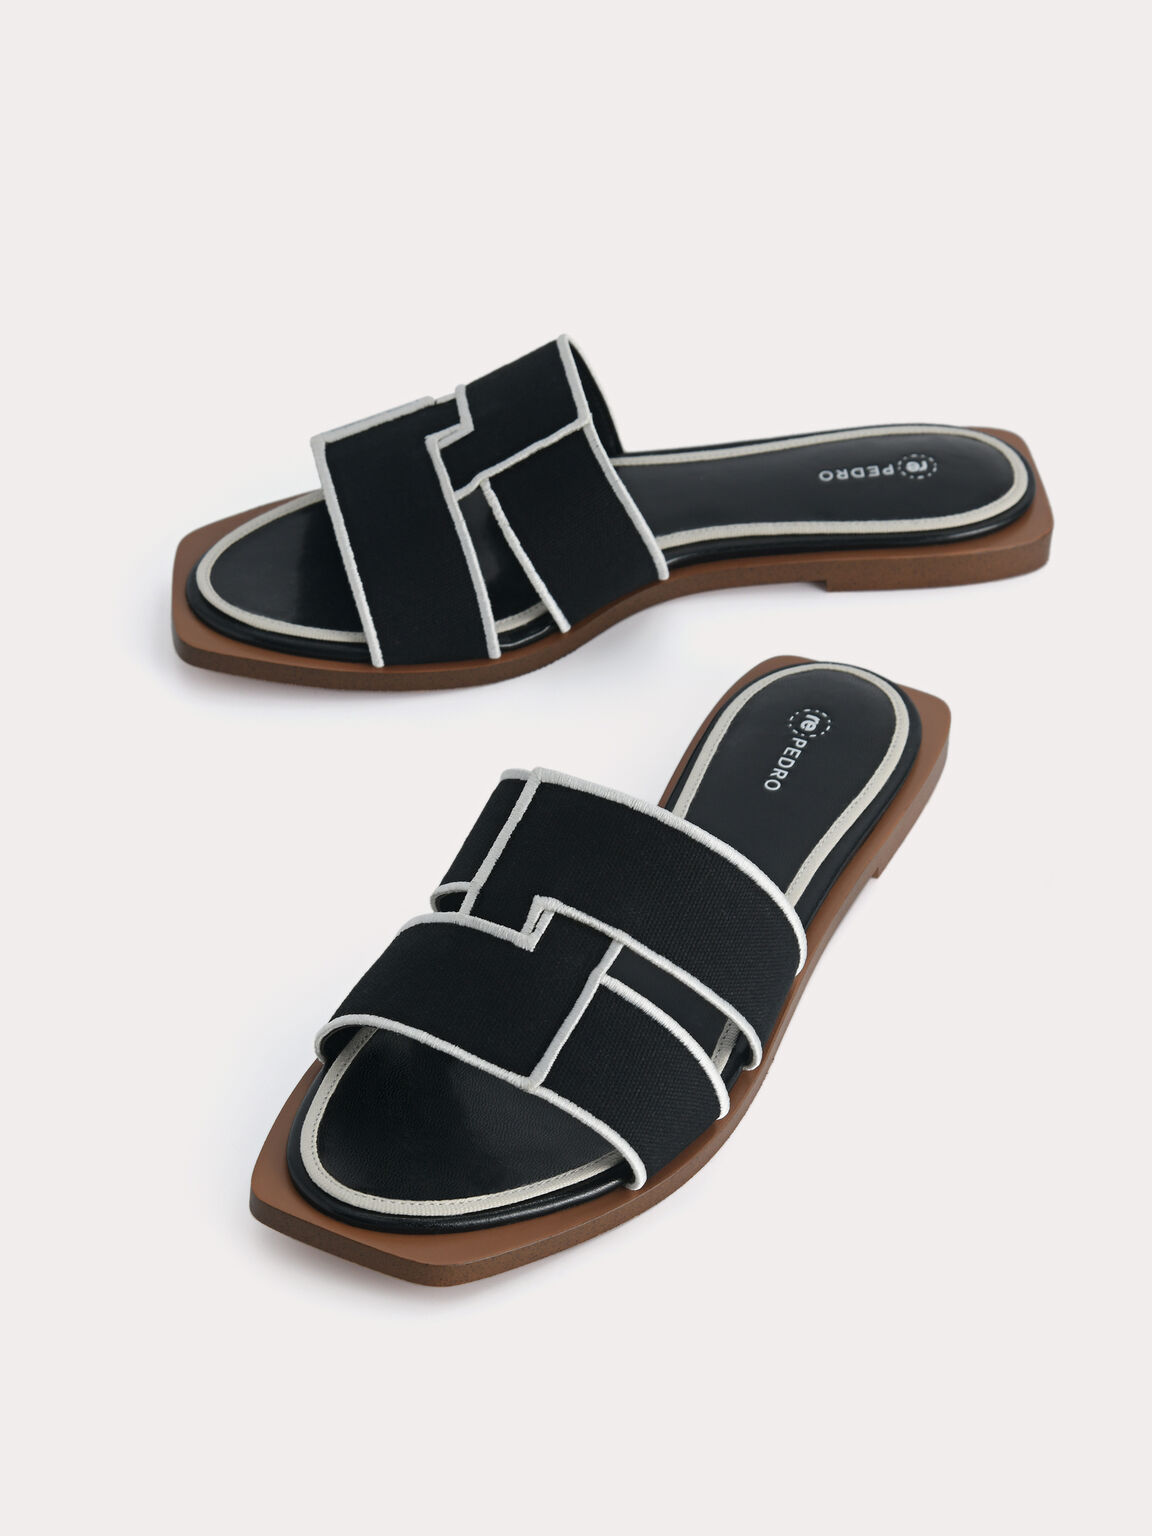 rePEDRO Cross-Strap Sandals, Black